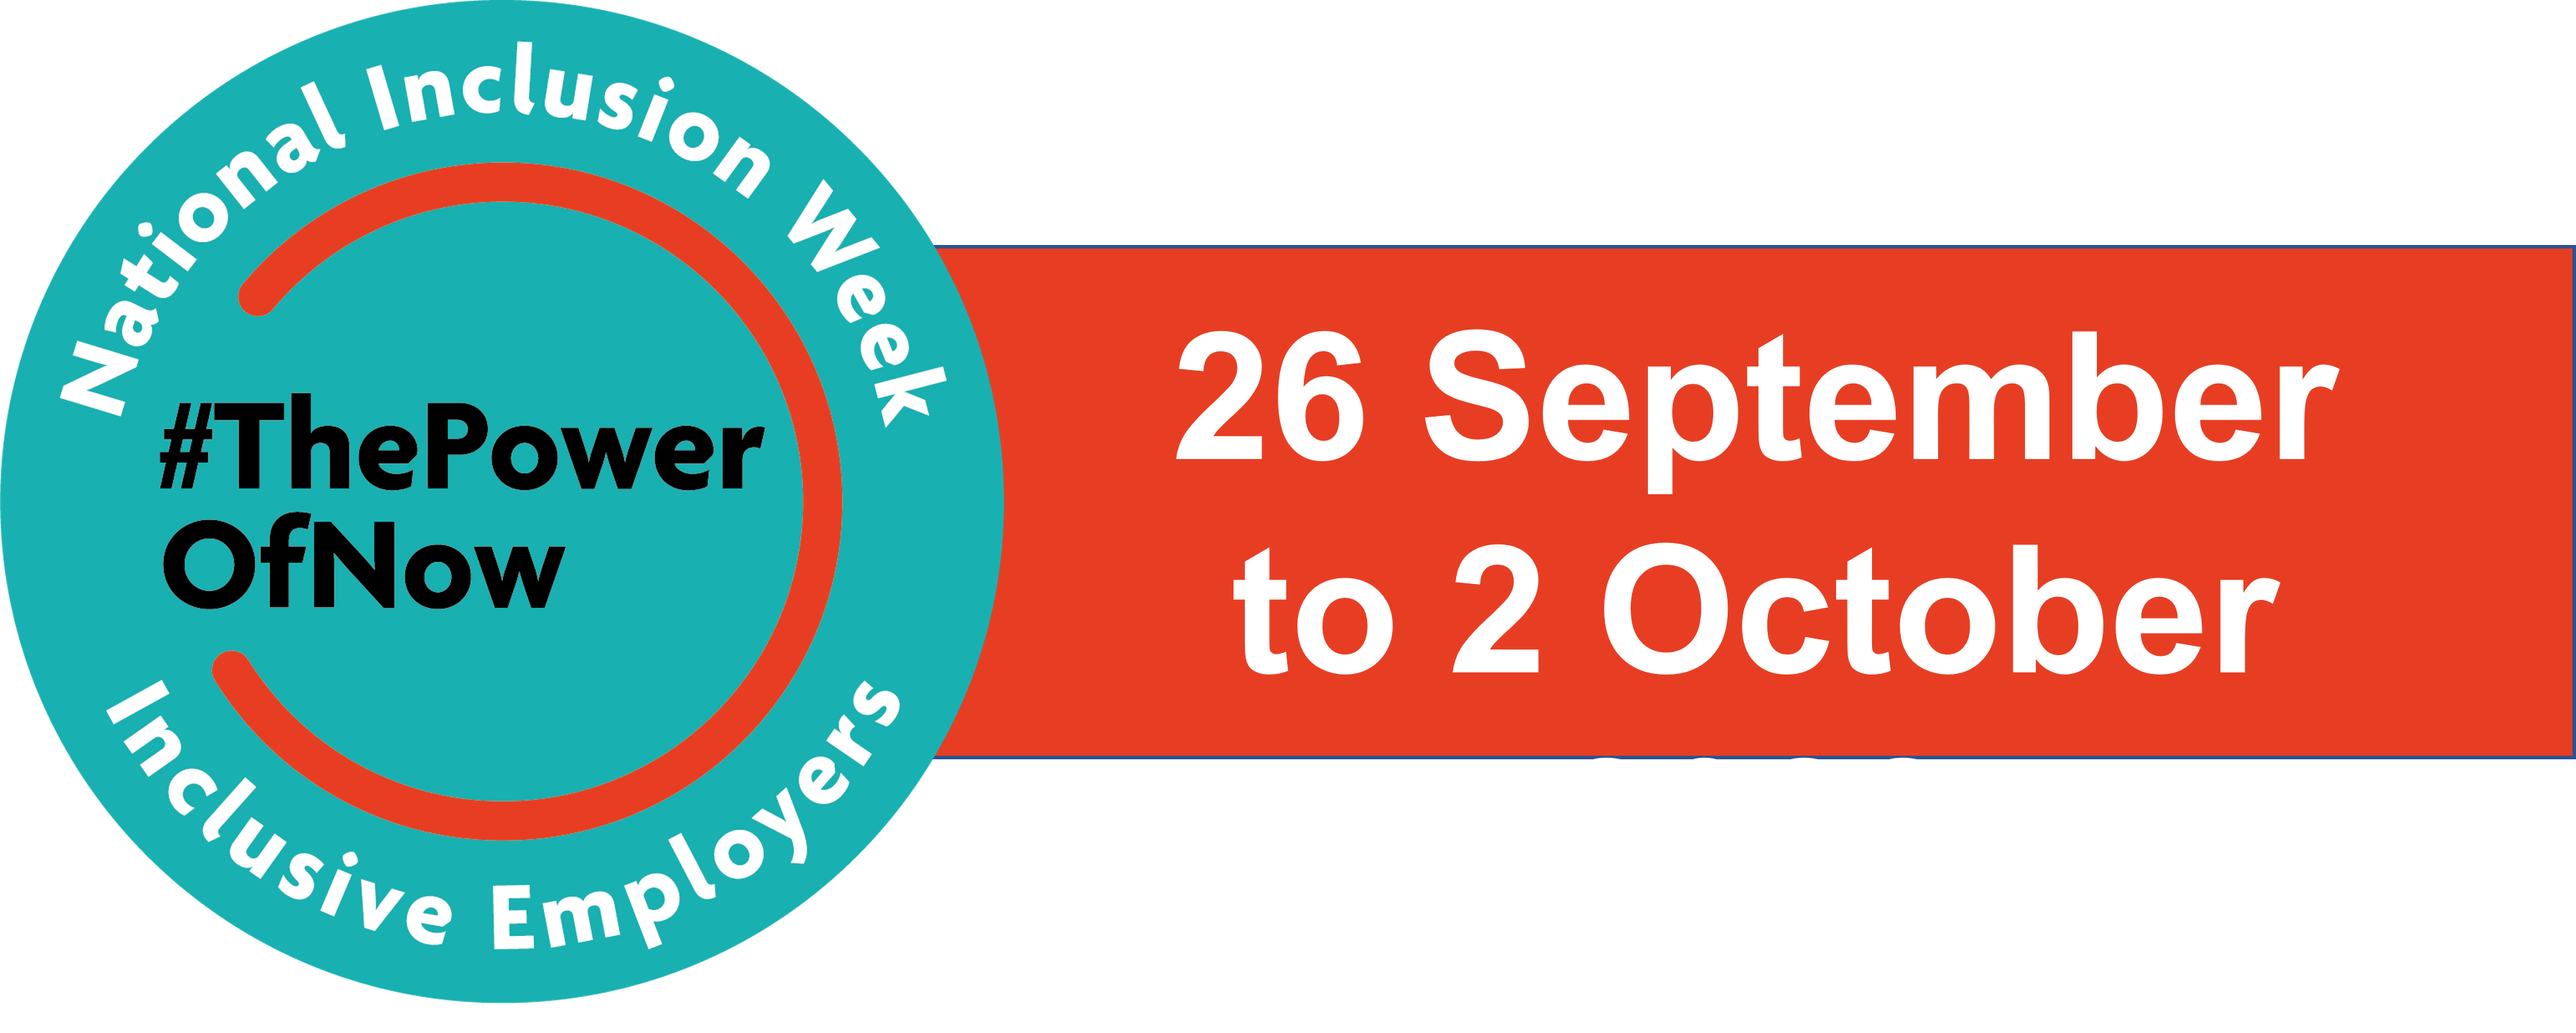 国家包容周标志，#ThePowerIsNow, 2022年9月26日至10月2日